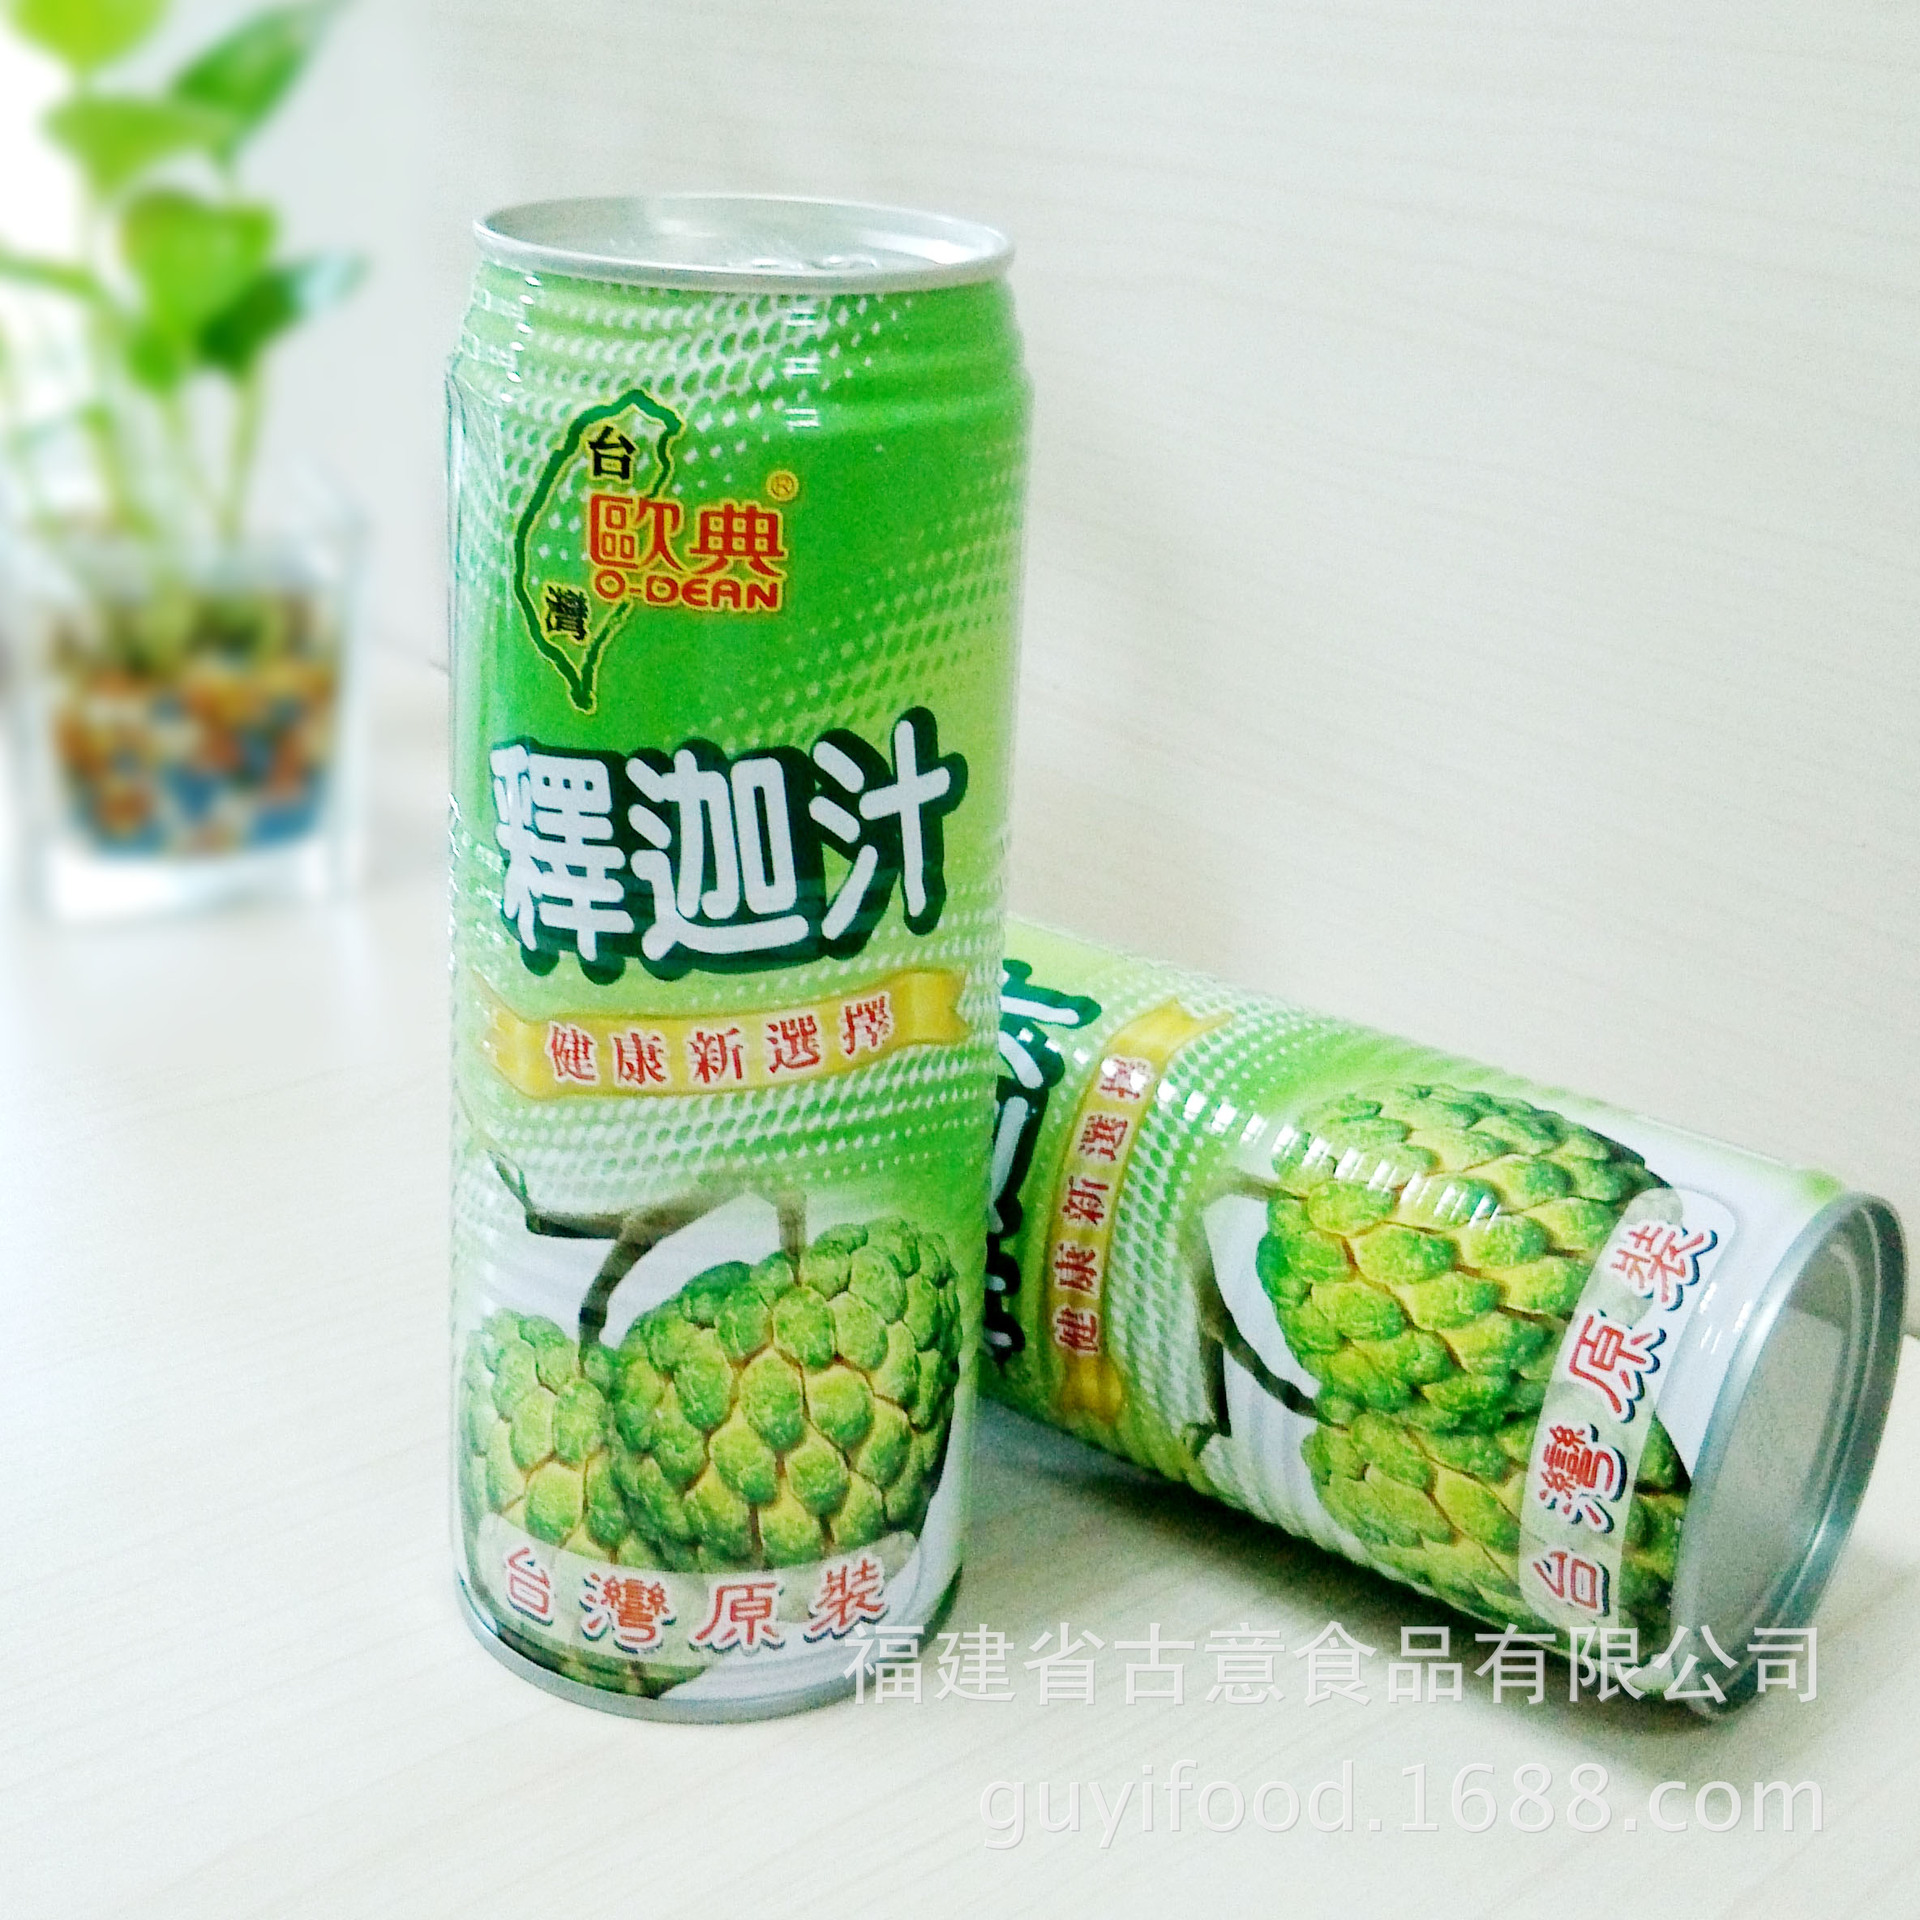 原装进口 -台湾欧典果汁500ml铁罐系列释迦汁